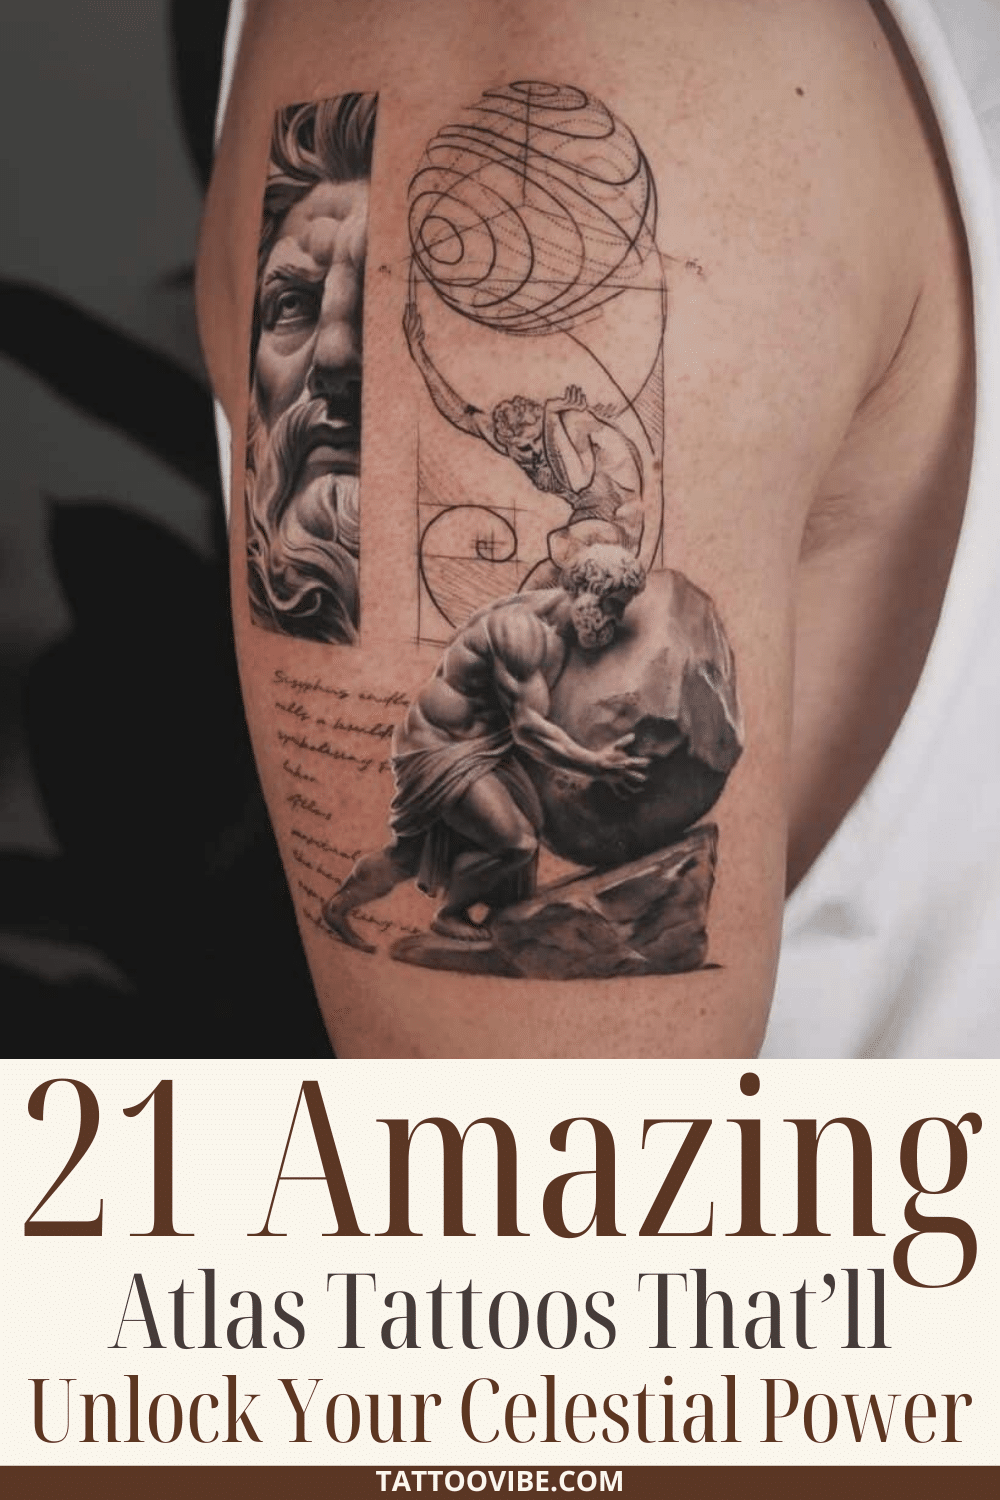 21 incredibili tatuaggi dell'atlante che sveleranno il vostro potere celestiale